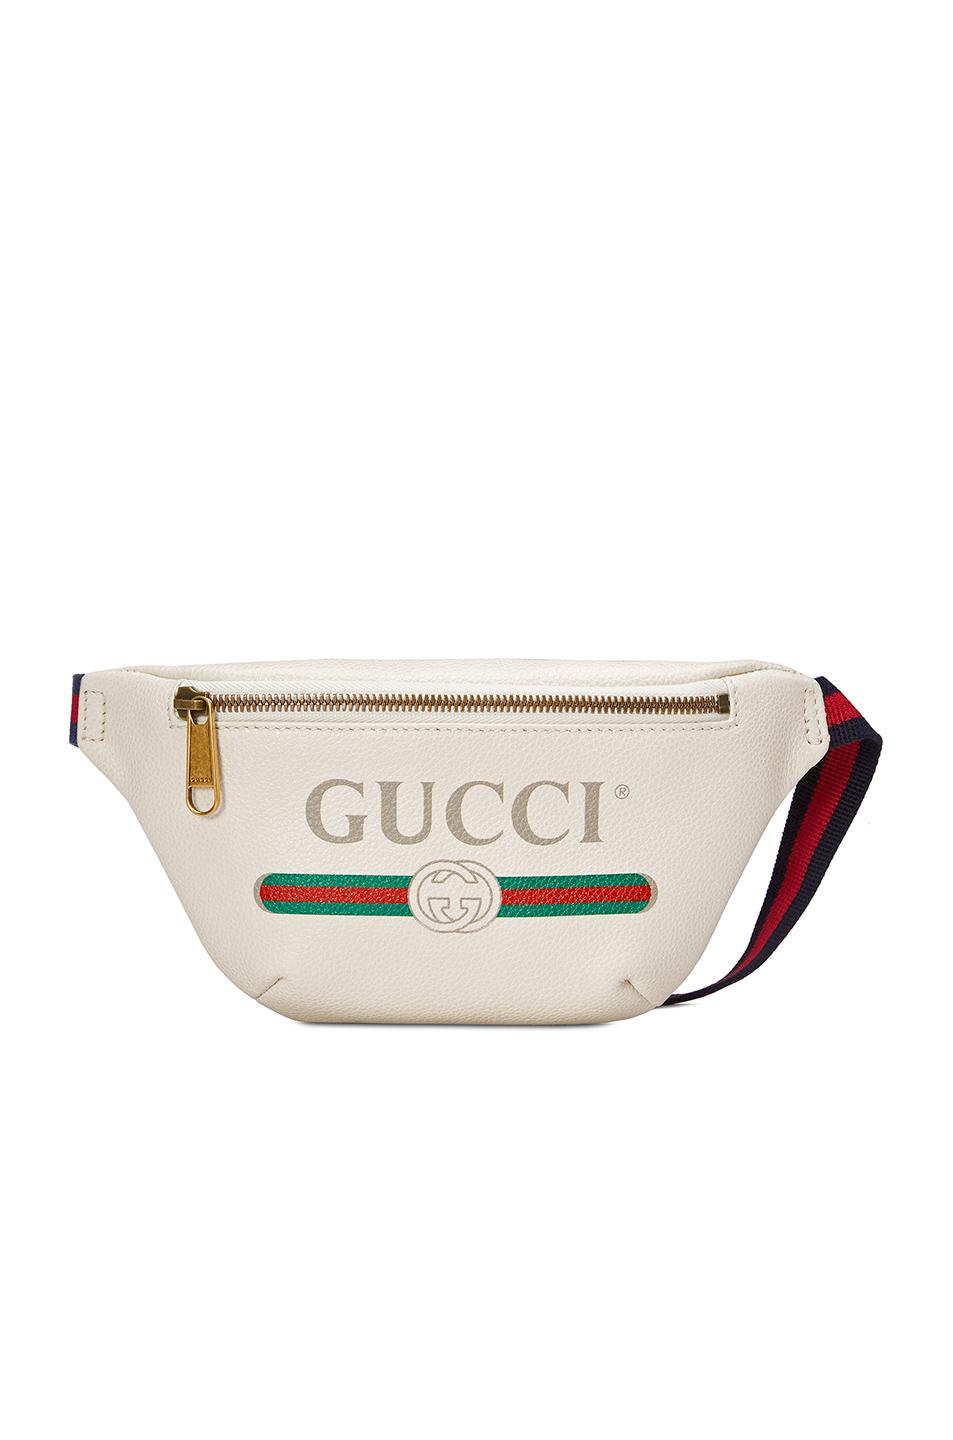 gucci print leather belt bag